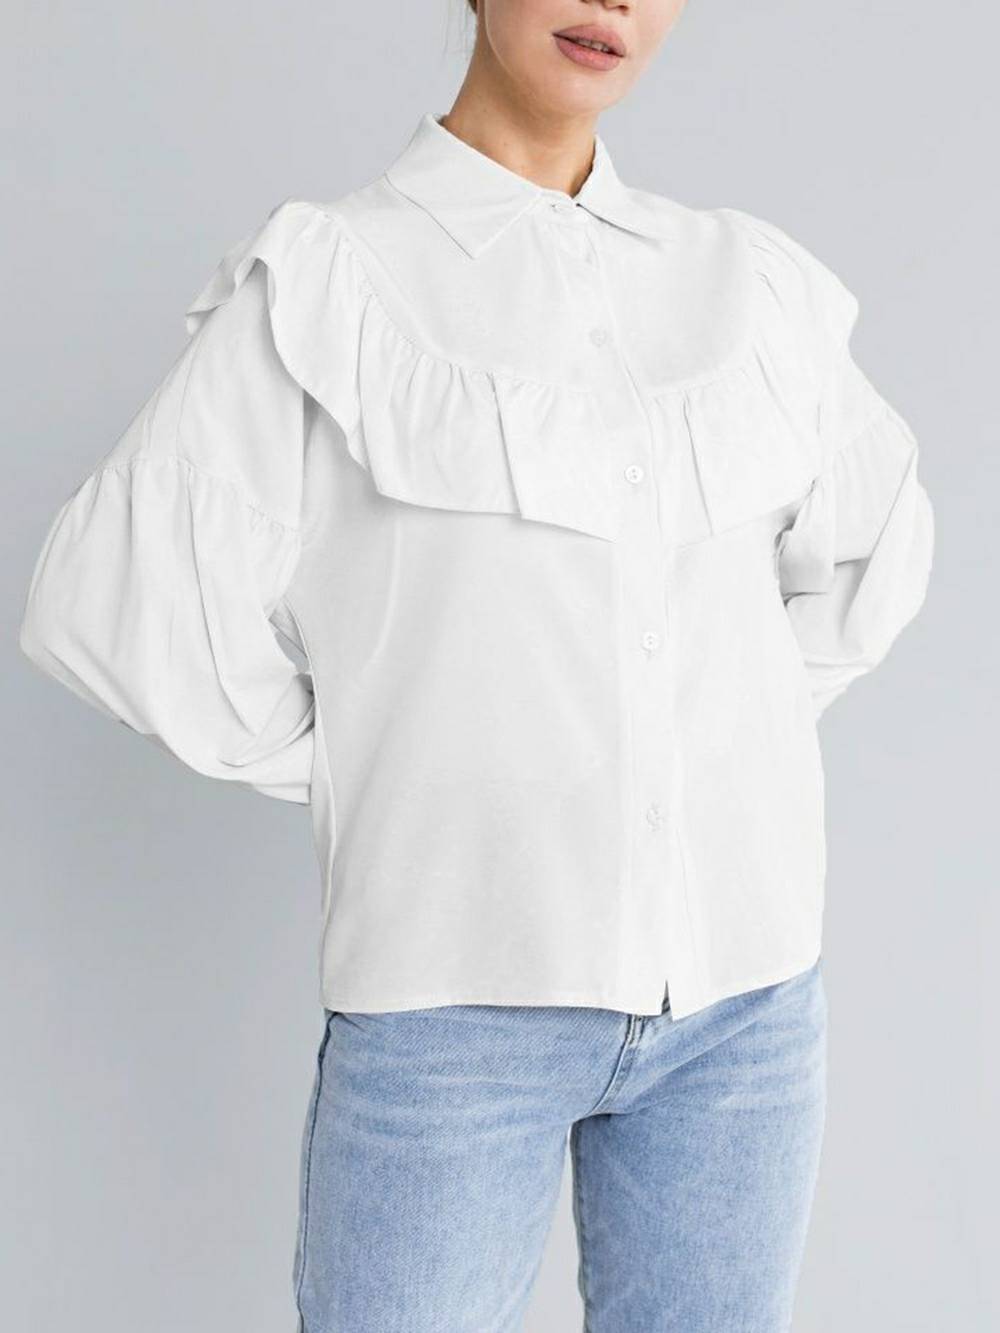 Γυναικείο πουκάμισο με βολάν Μασίφ Slim Γυναικείο πουκάμισο